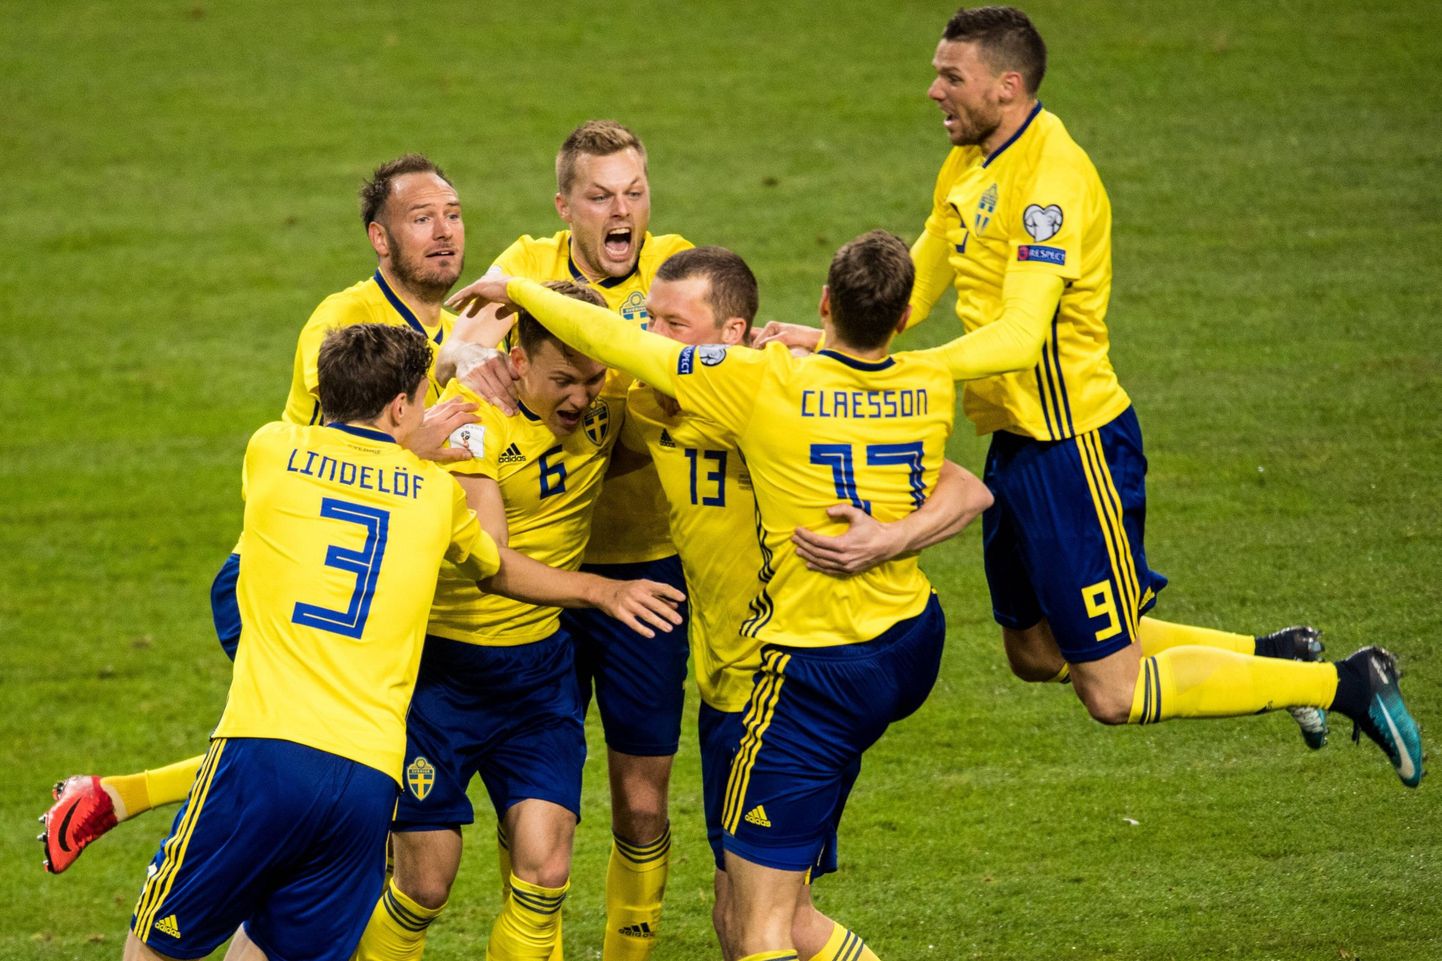 Rootsi jalgpallikoondise mängijat väravat tähistamas.